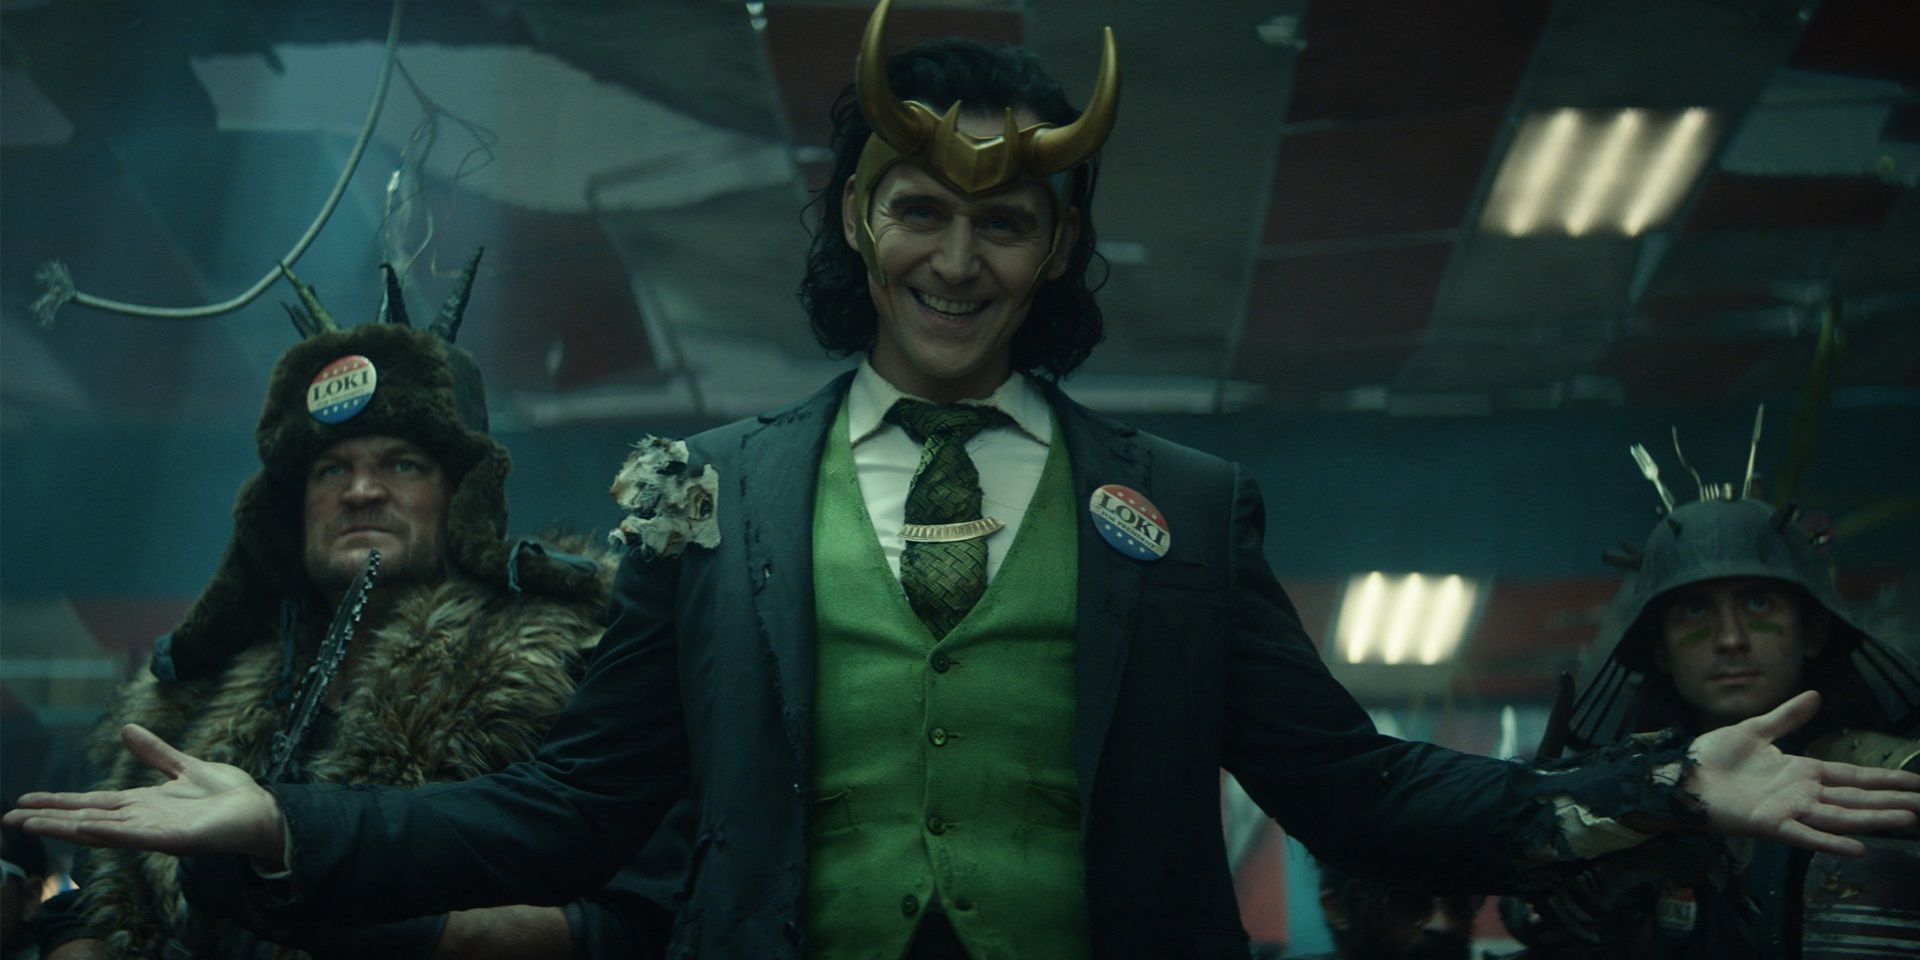 President Loki with his henchmen in Loki episode 5